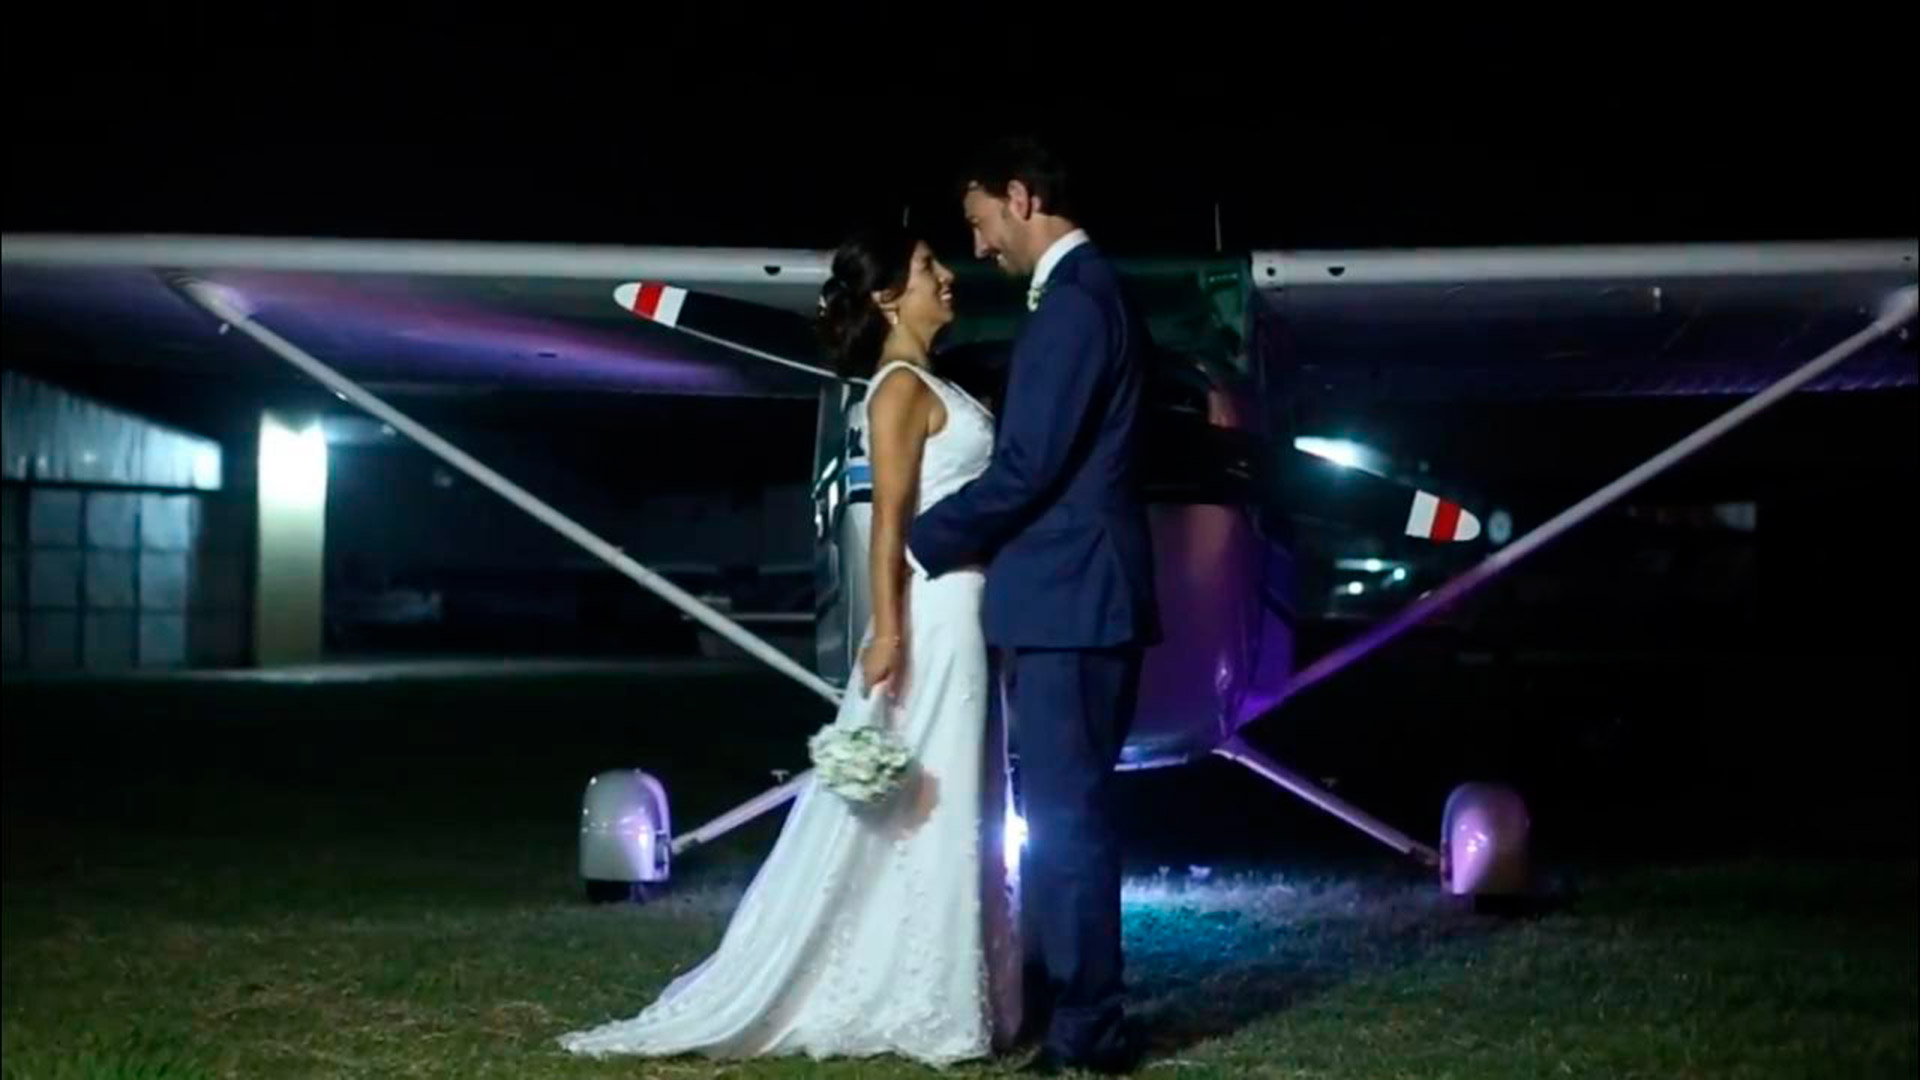 Jenny llegó a su boda piloteando un avión y Marcos Martín, su esposo y colega, otro (AMAA - Asociación Mujeres en Aviación Argentina)